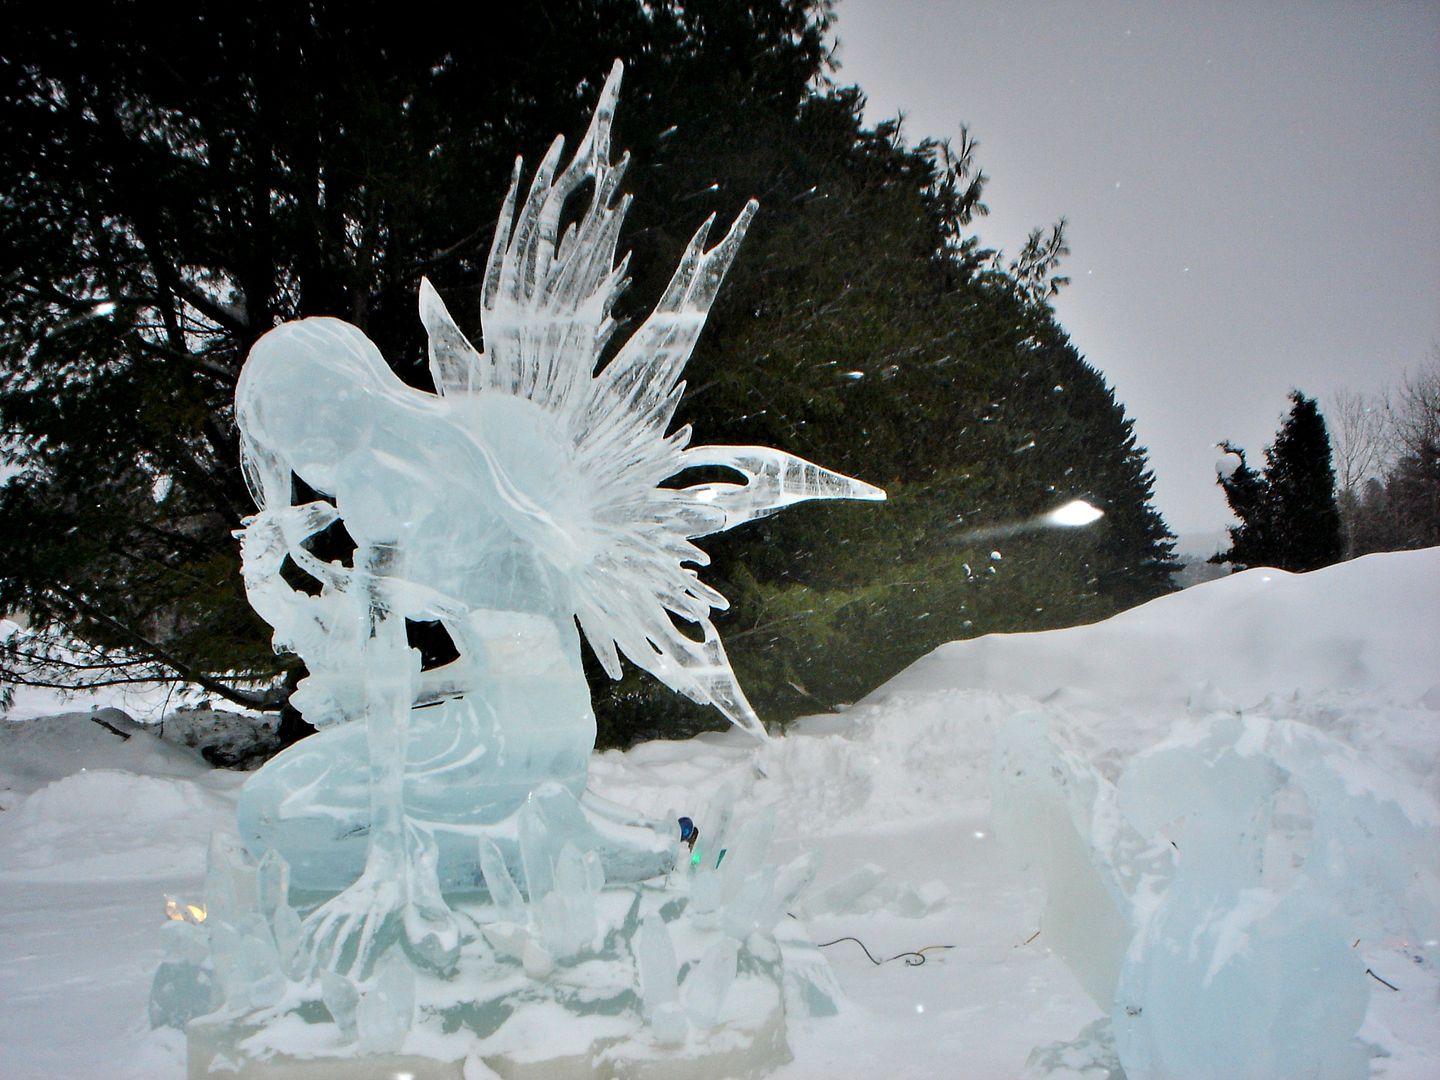 Joliette/St-Côme/St-Zénon festival sculpture de glace Photo ride-report 2février2019 DSC00350_zpsbilmsw71